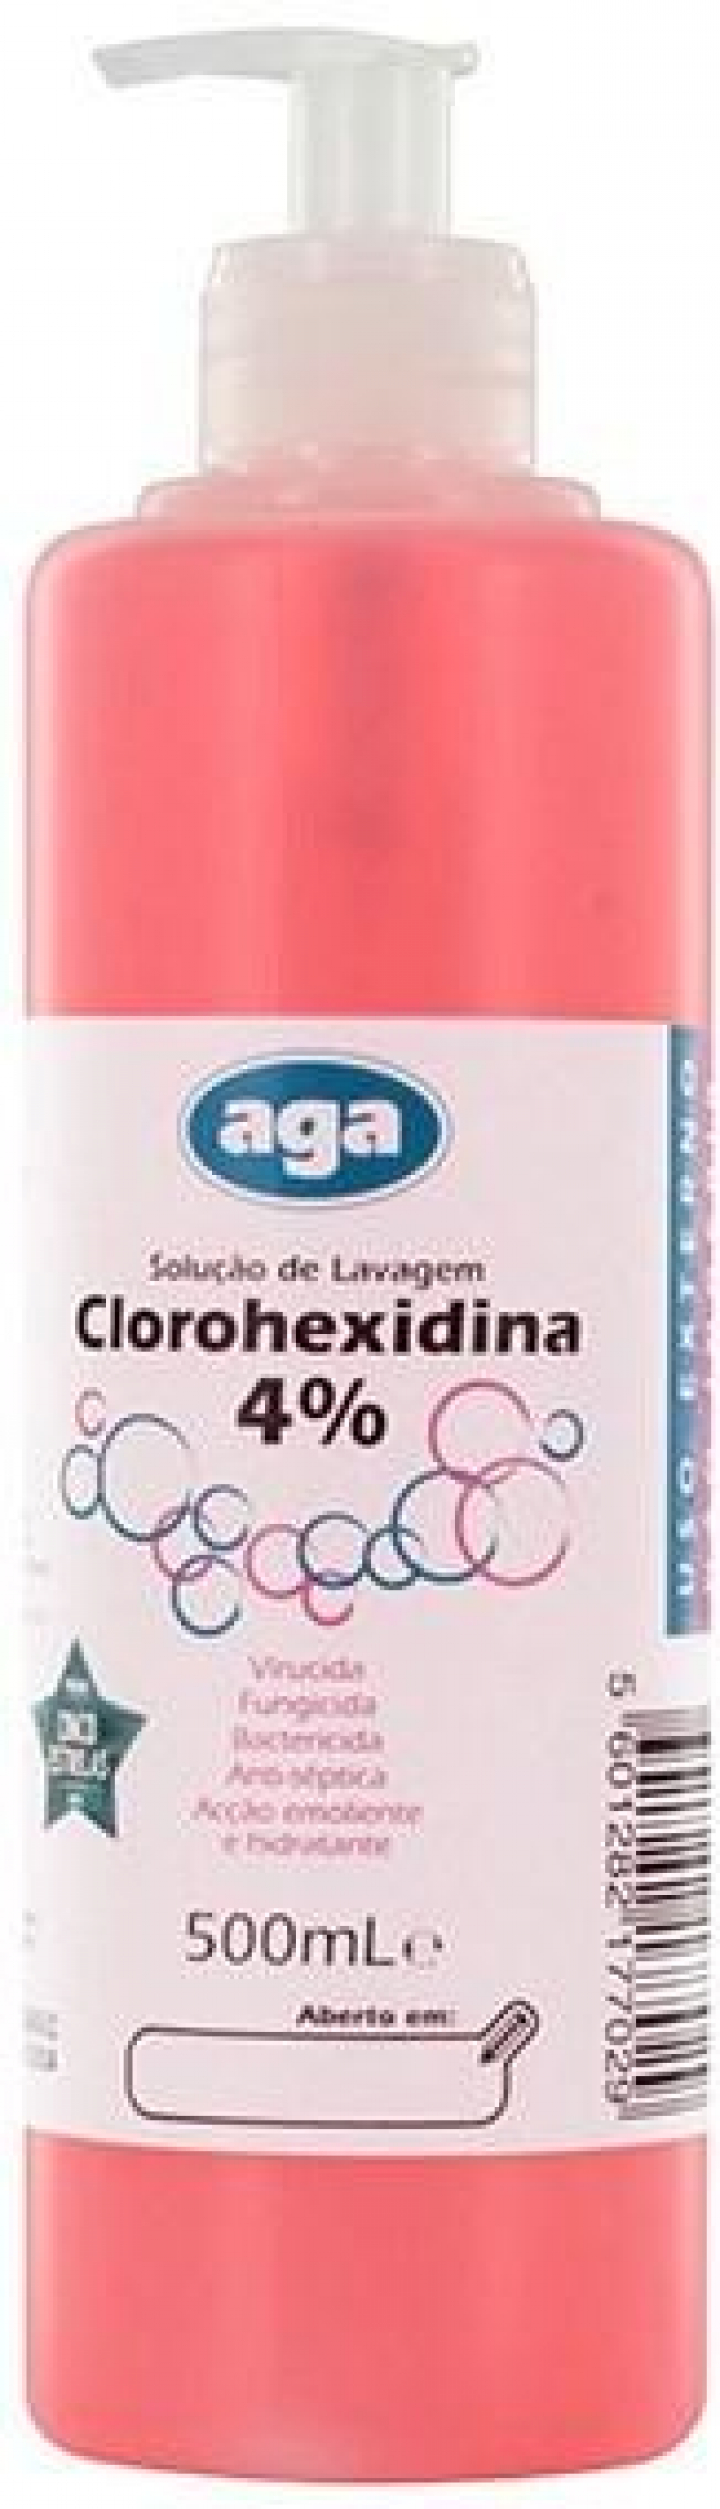 Solução aquosa para lavagem e desinfeção da pele com doseador Clorohexidina 4% 500ml